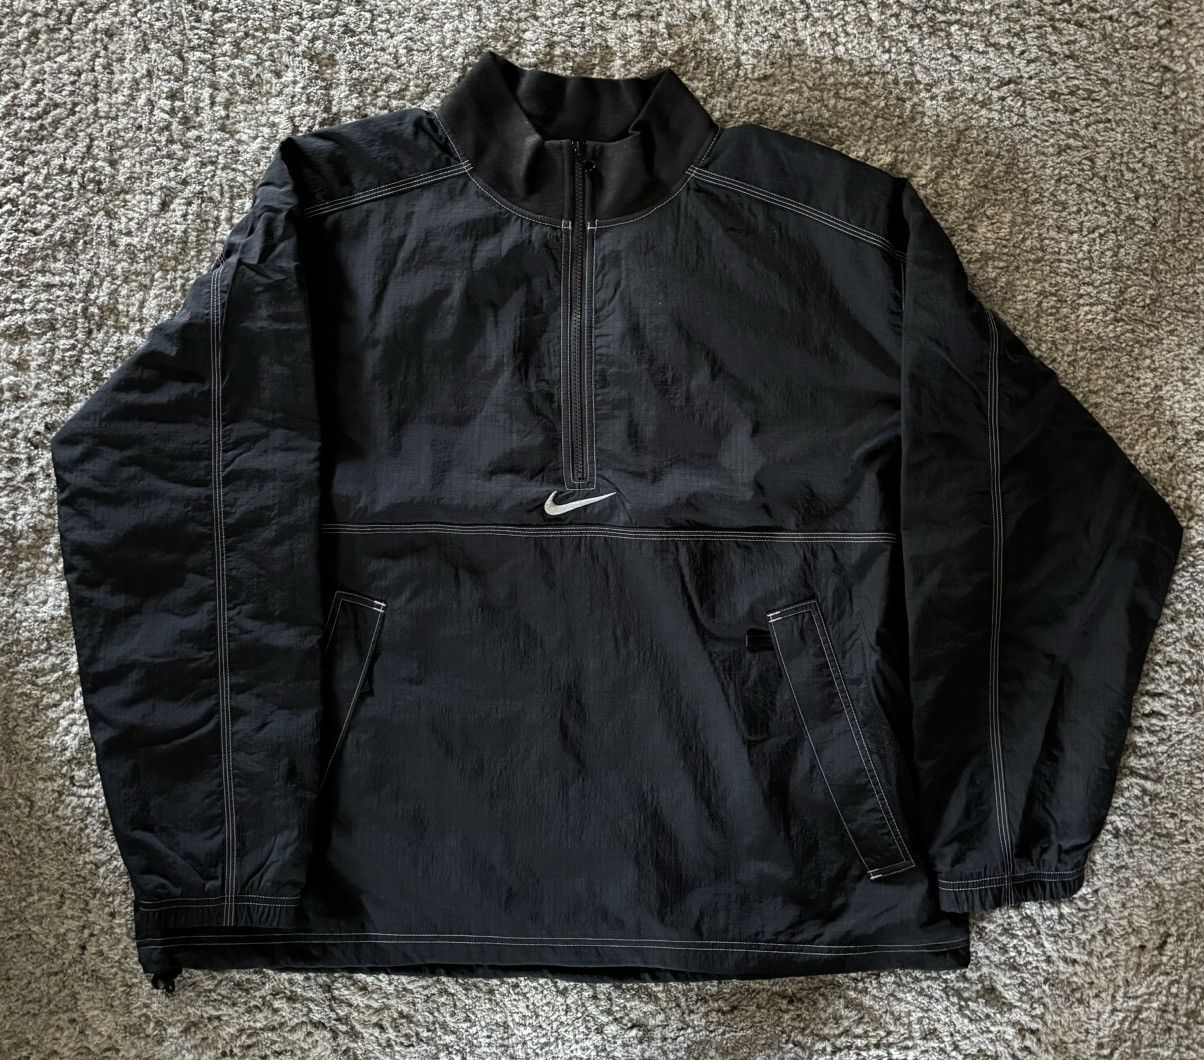 Supreme Supreme x Nike Ripstop Pullover Black | Grailed